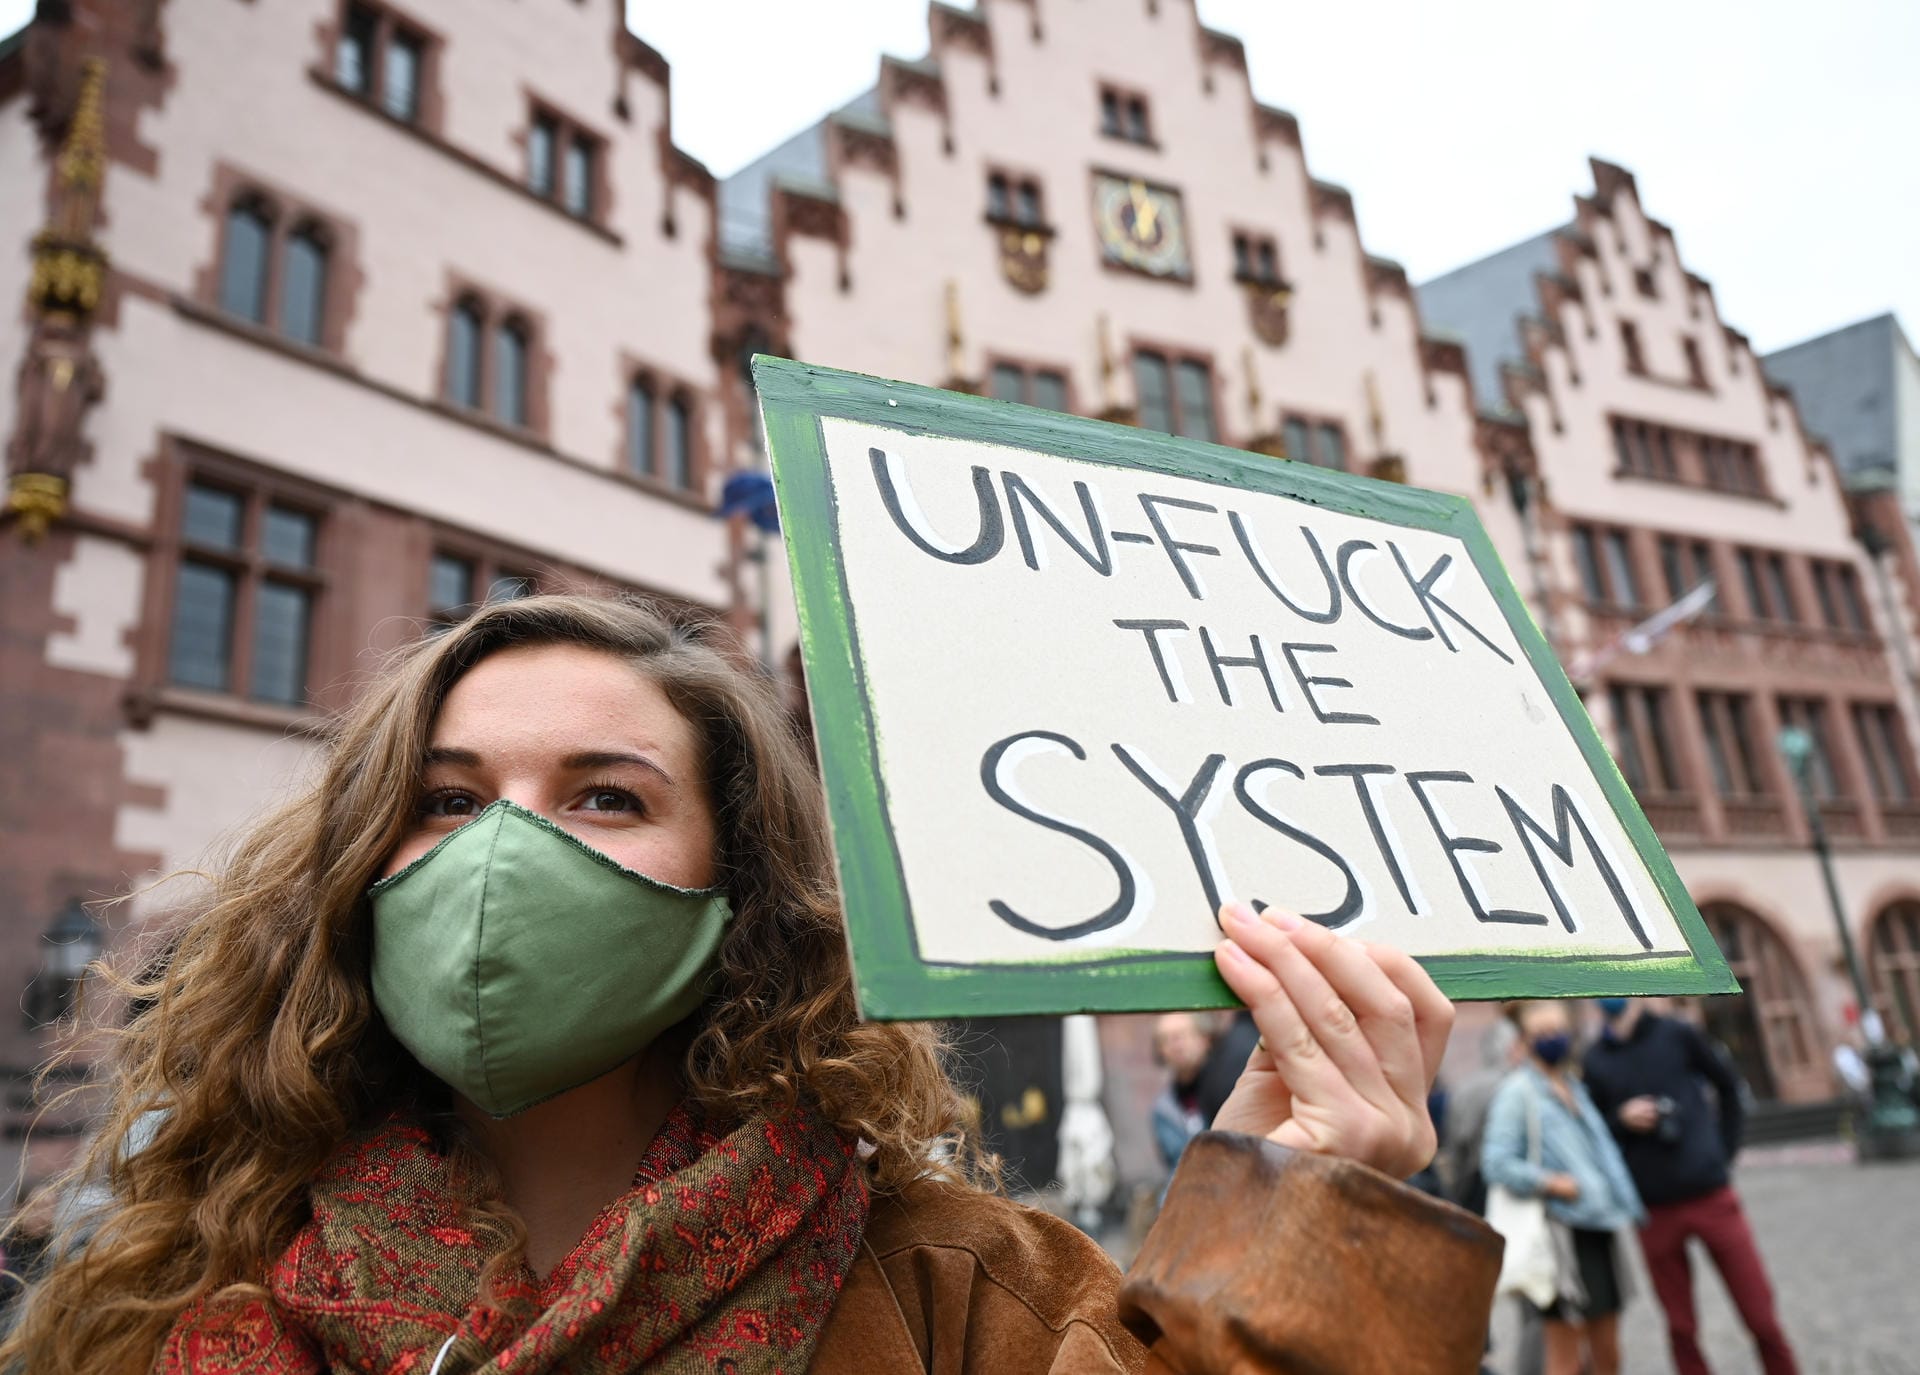 Frankfurt: "Un-Fuck the System" steht auf dem Schild der Demonstrantin. In Frankfurt. In der Main-Metropole waren drei Demo-Züge angemeldet, mit einer Abschlussveranstaltung am Mainufer.